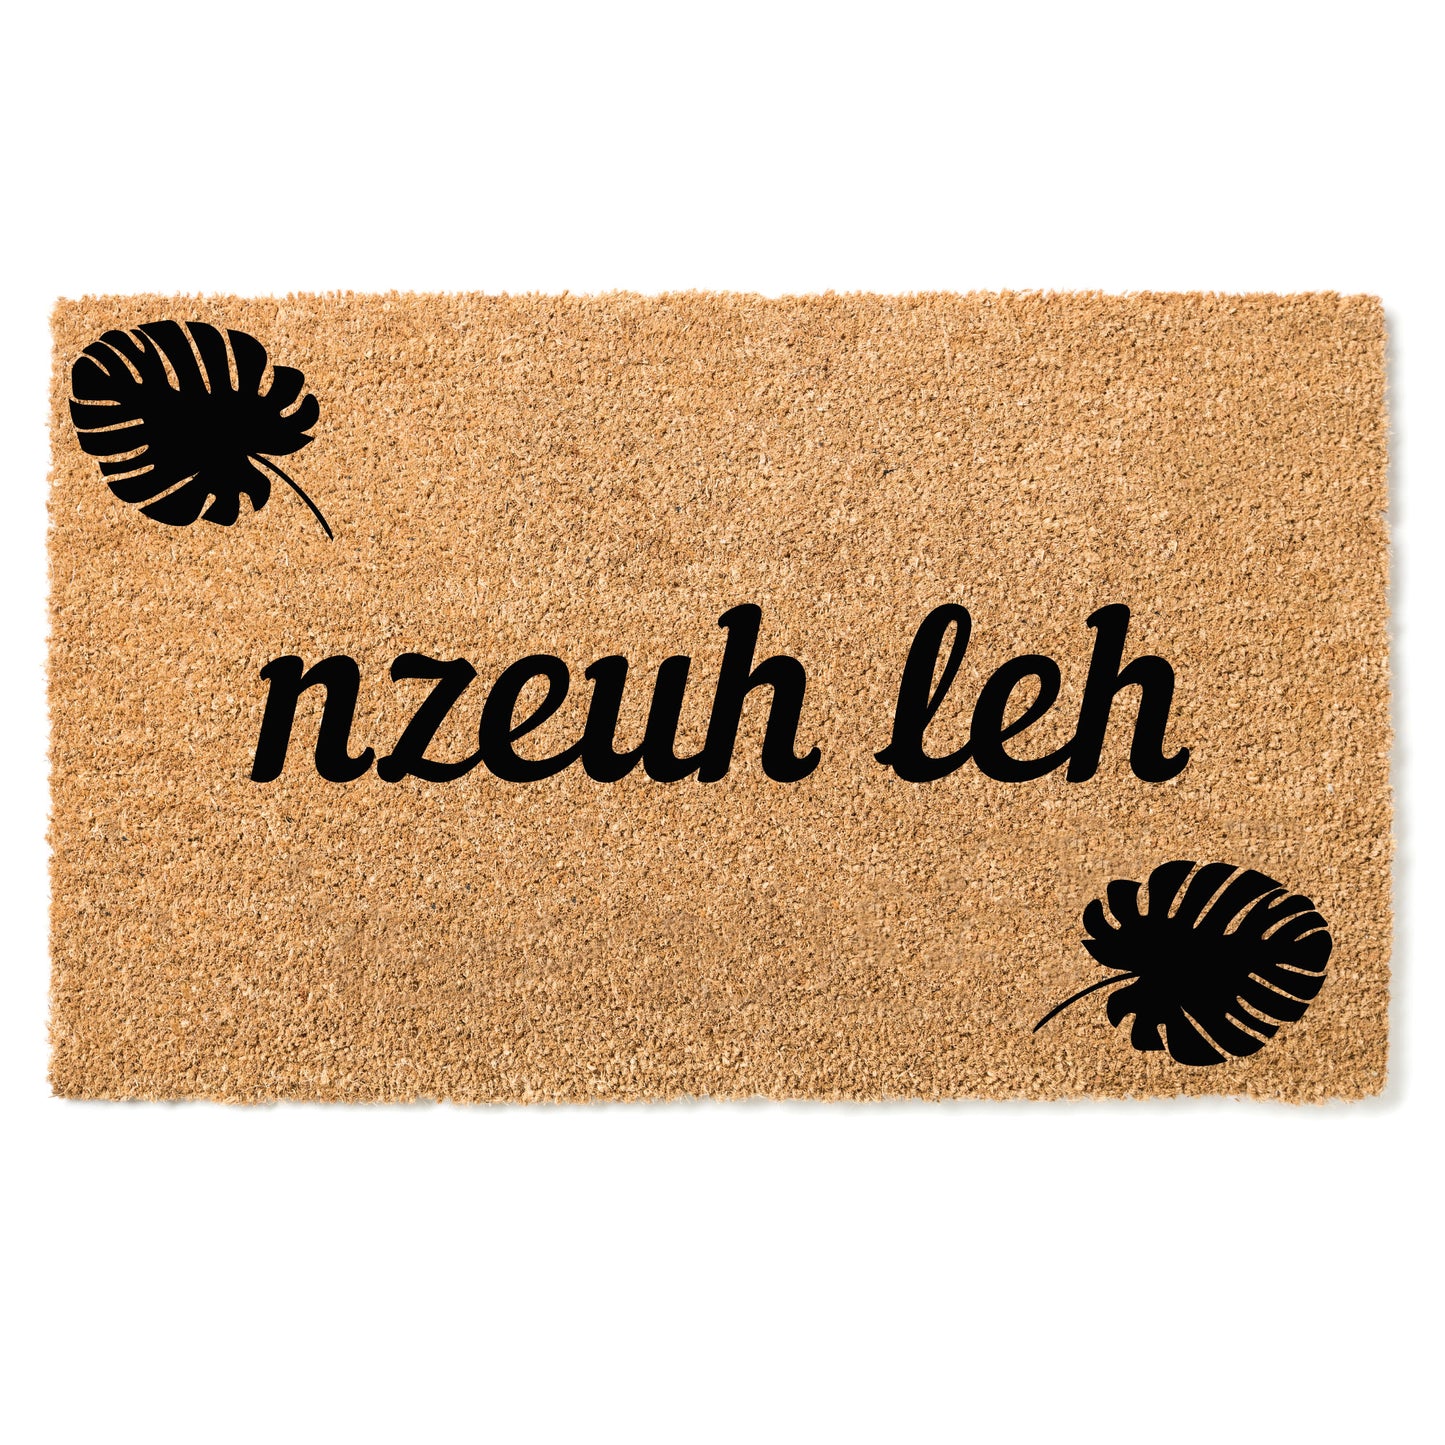 Nzeuh leh door mat- "Hello" in Bafang